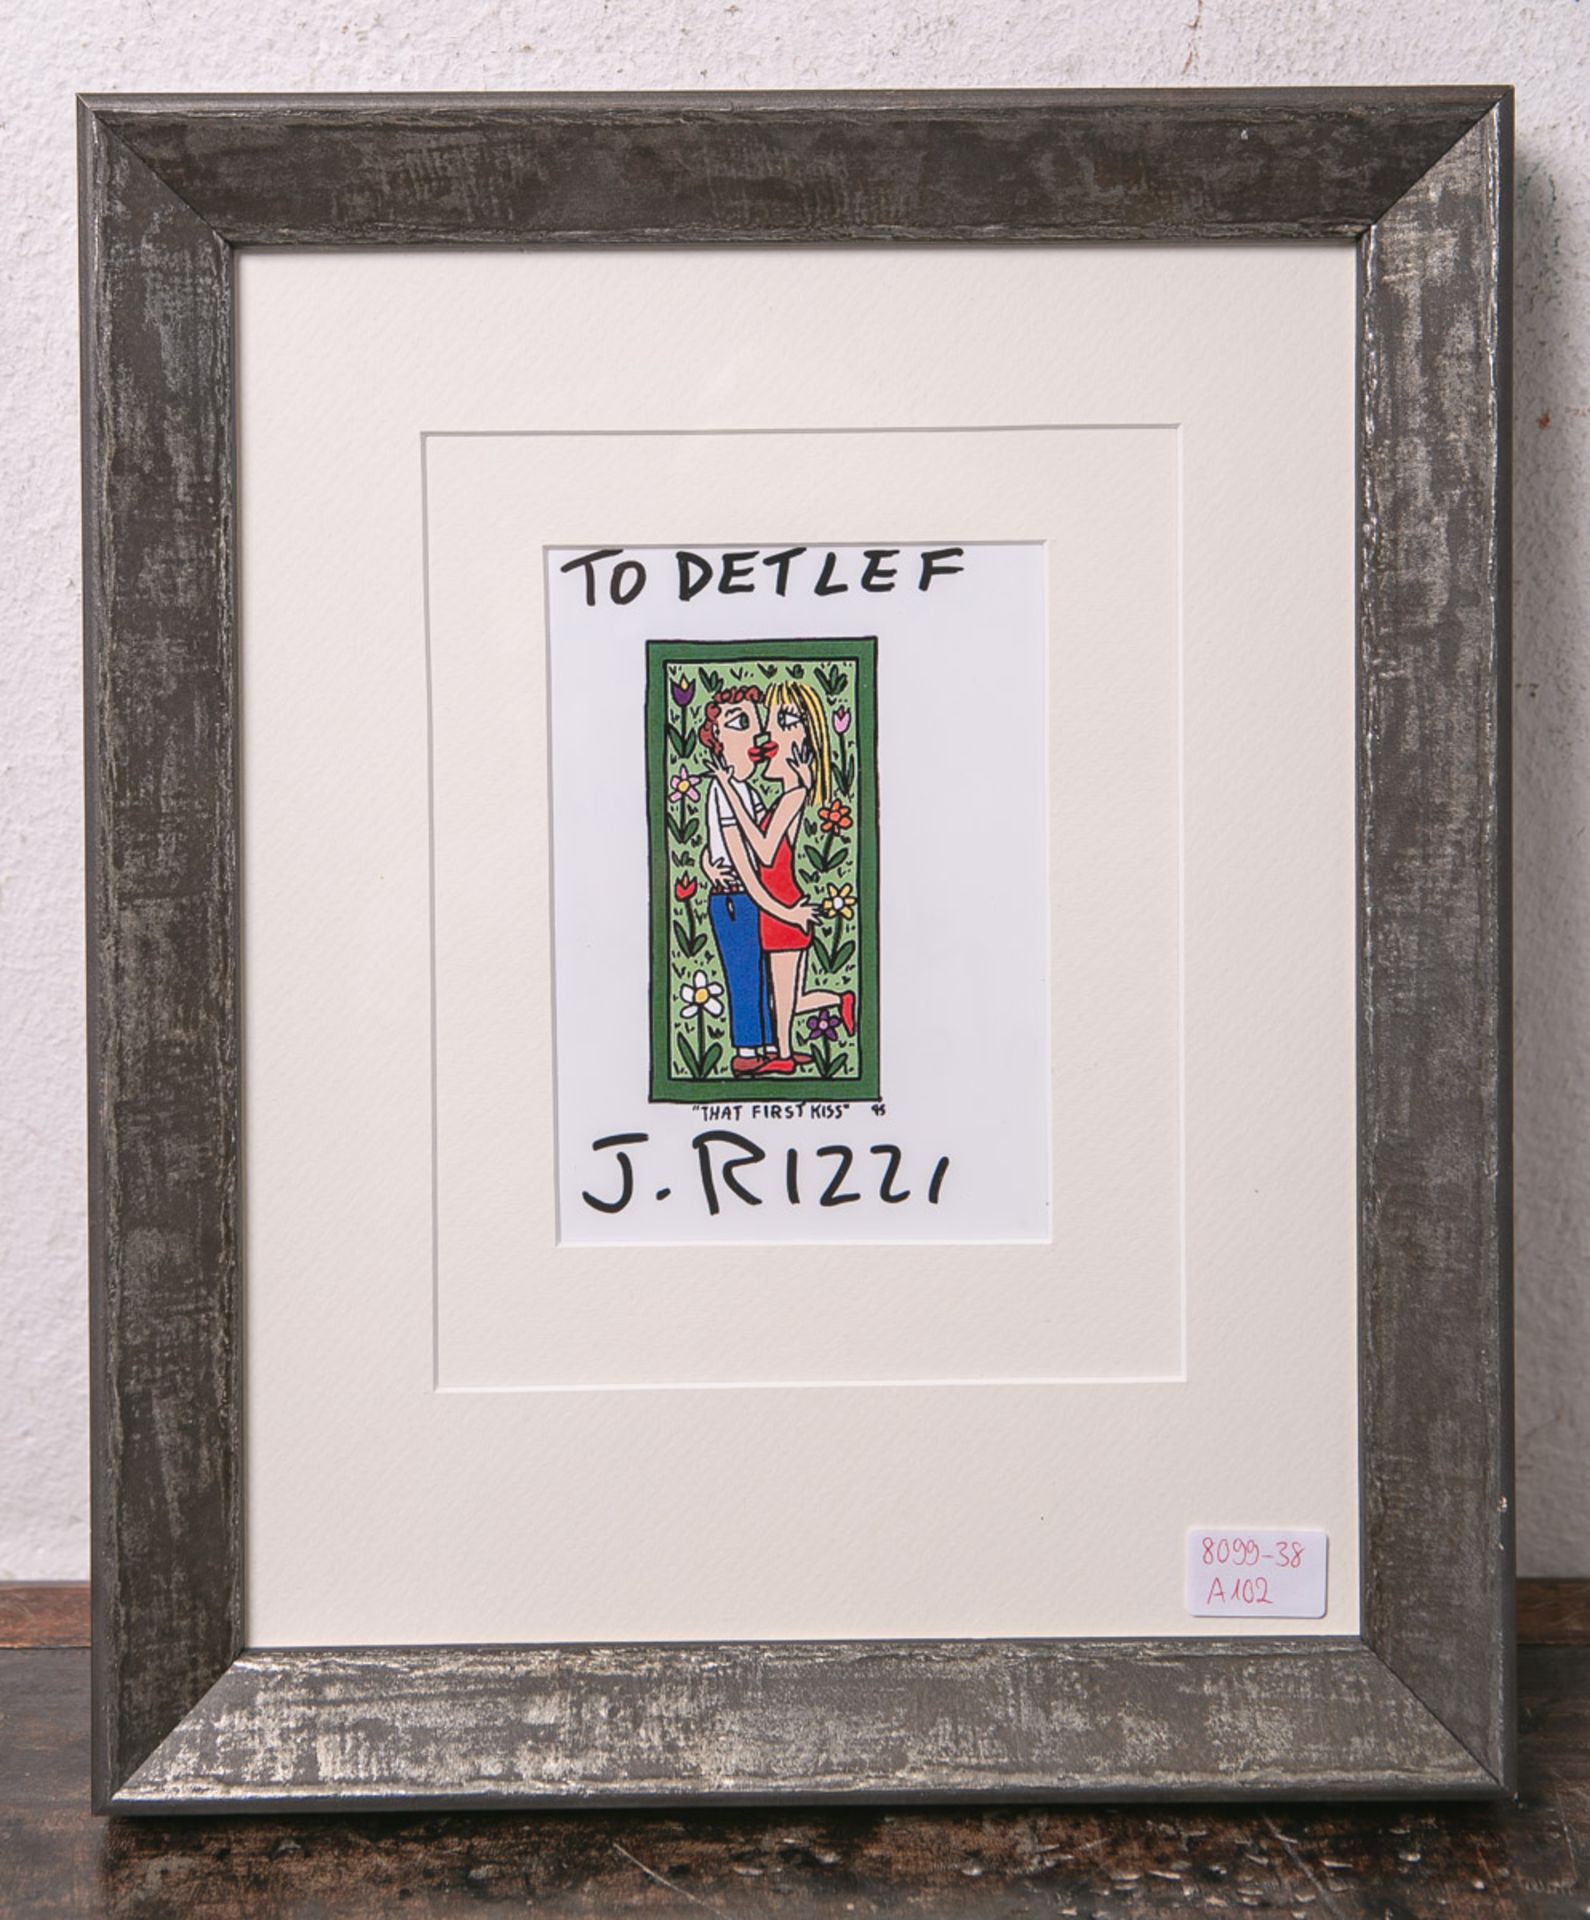 Rizzi, James (1950 - 2011), "That